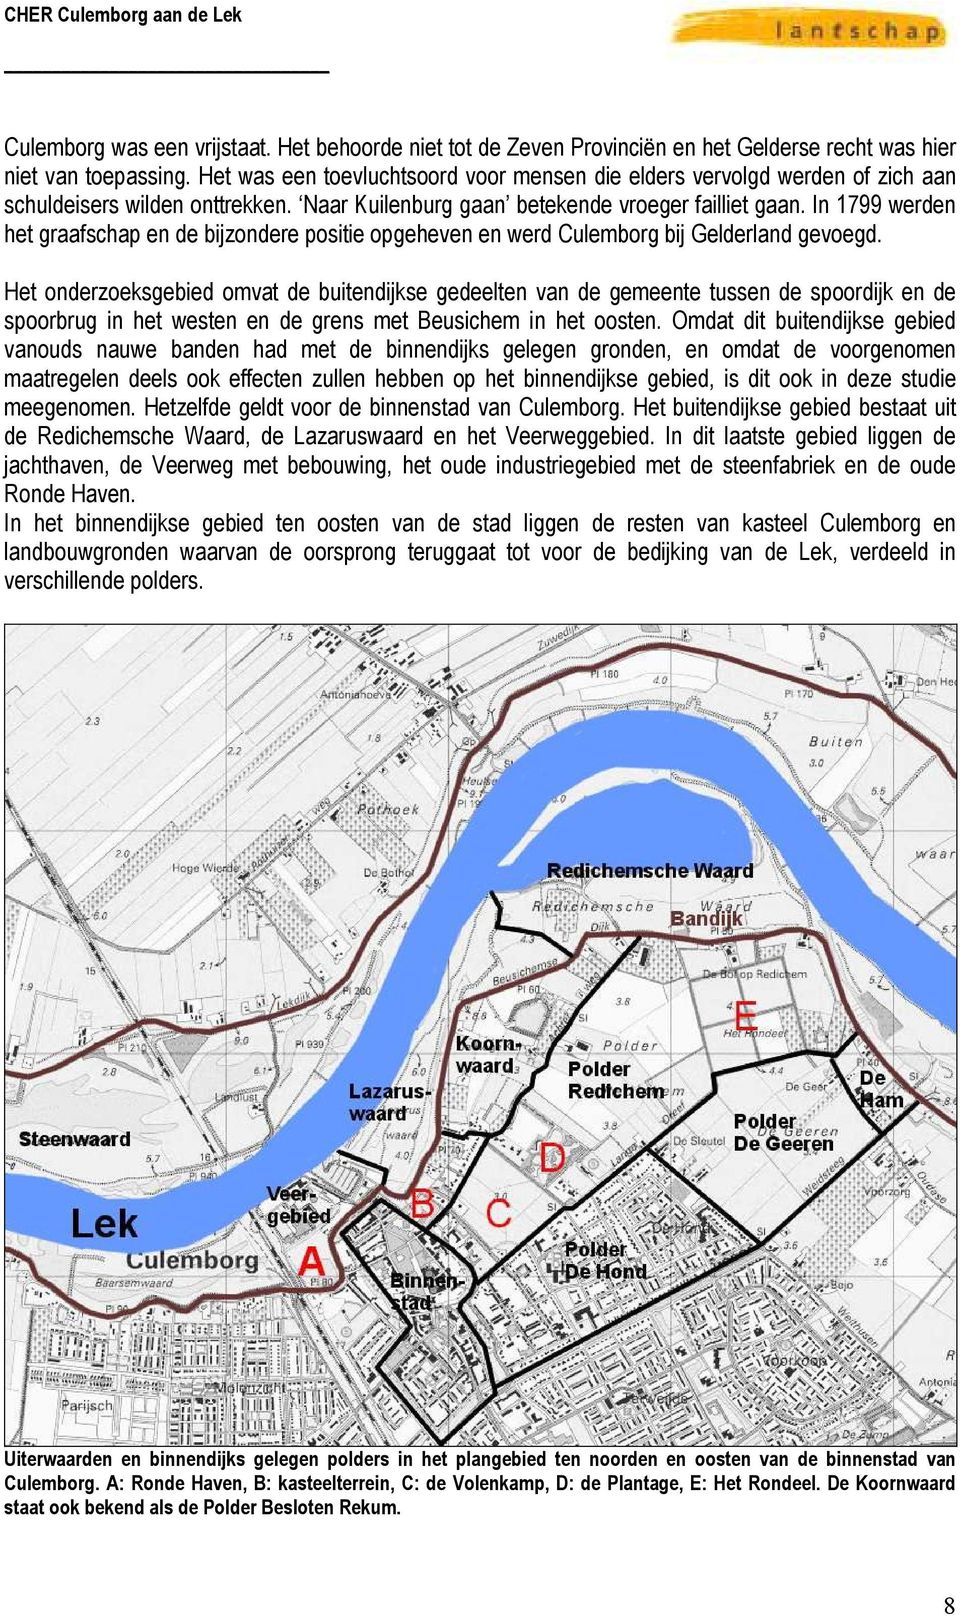 In 1799 werden het graafschap en de bijzondere positie opgeheven en werd Culemborg bij Gelderland gevoegd.